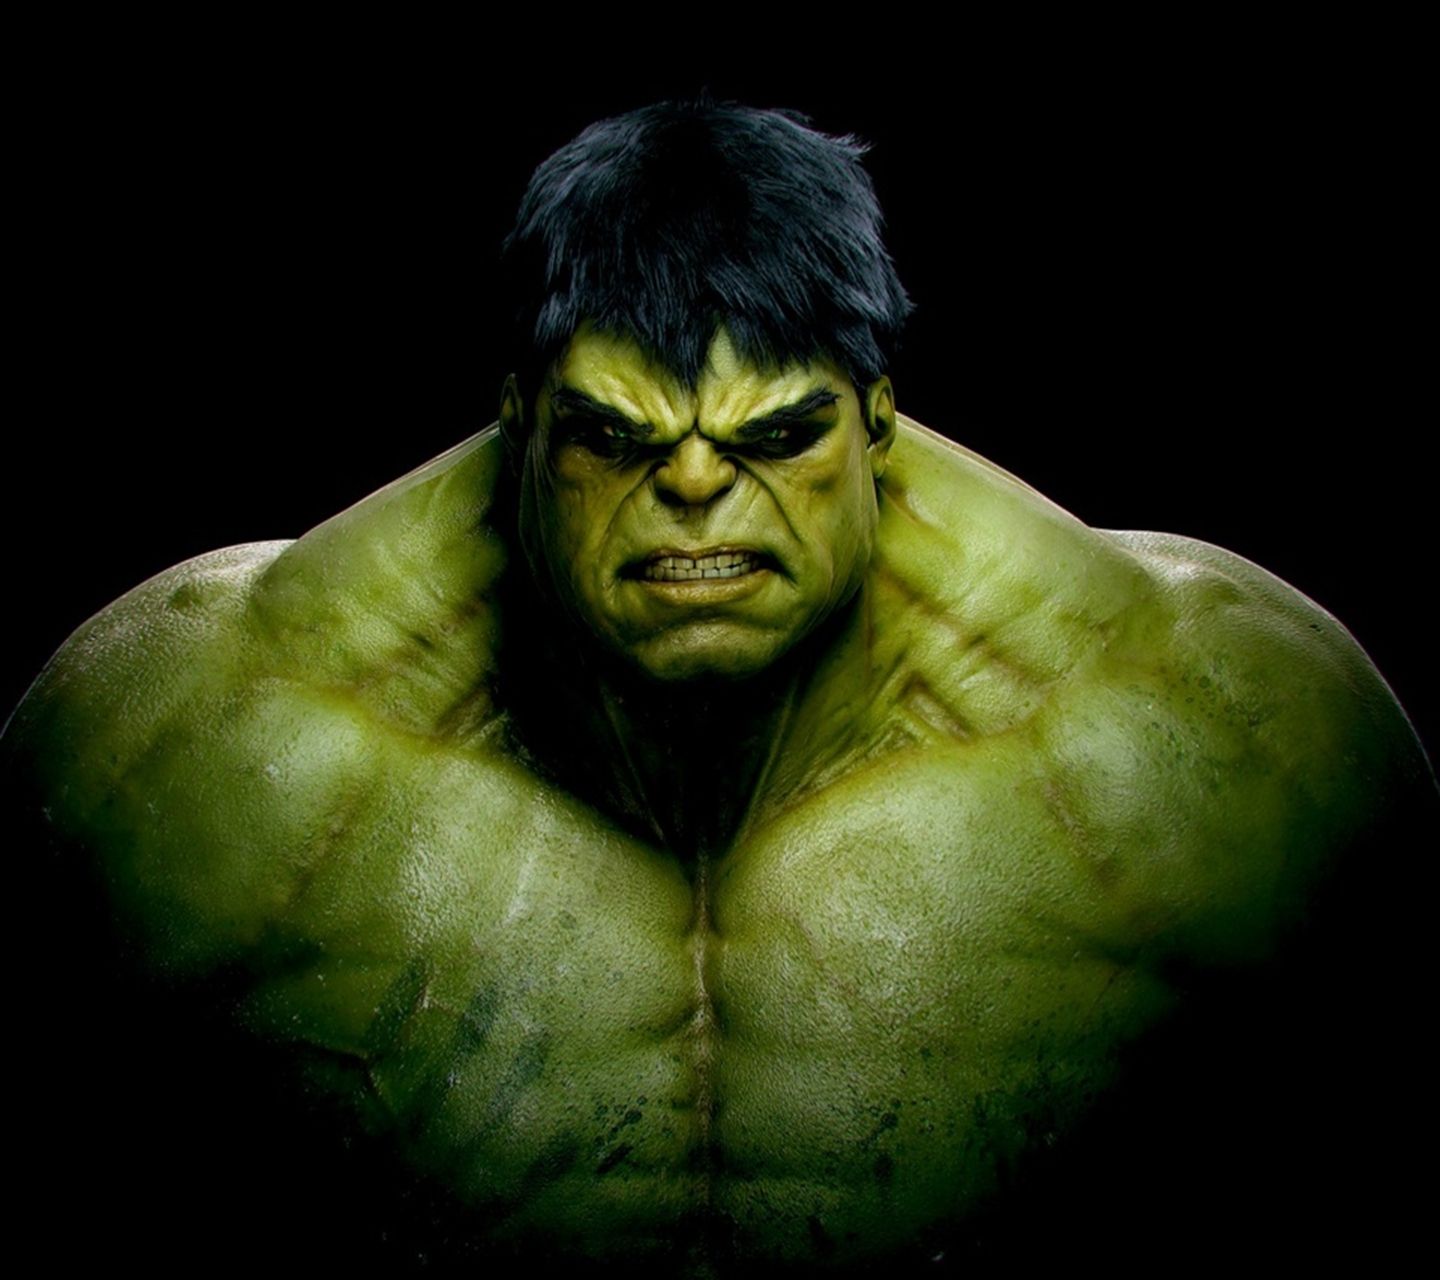 Angry hulk. Incredible Hulk. Avenger Hulk. Hulk Amoled Wallpaper 2020. MY FB IMAGES